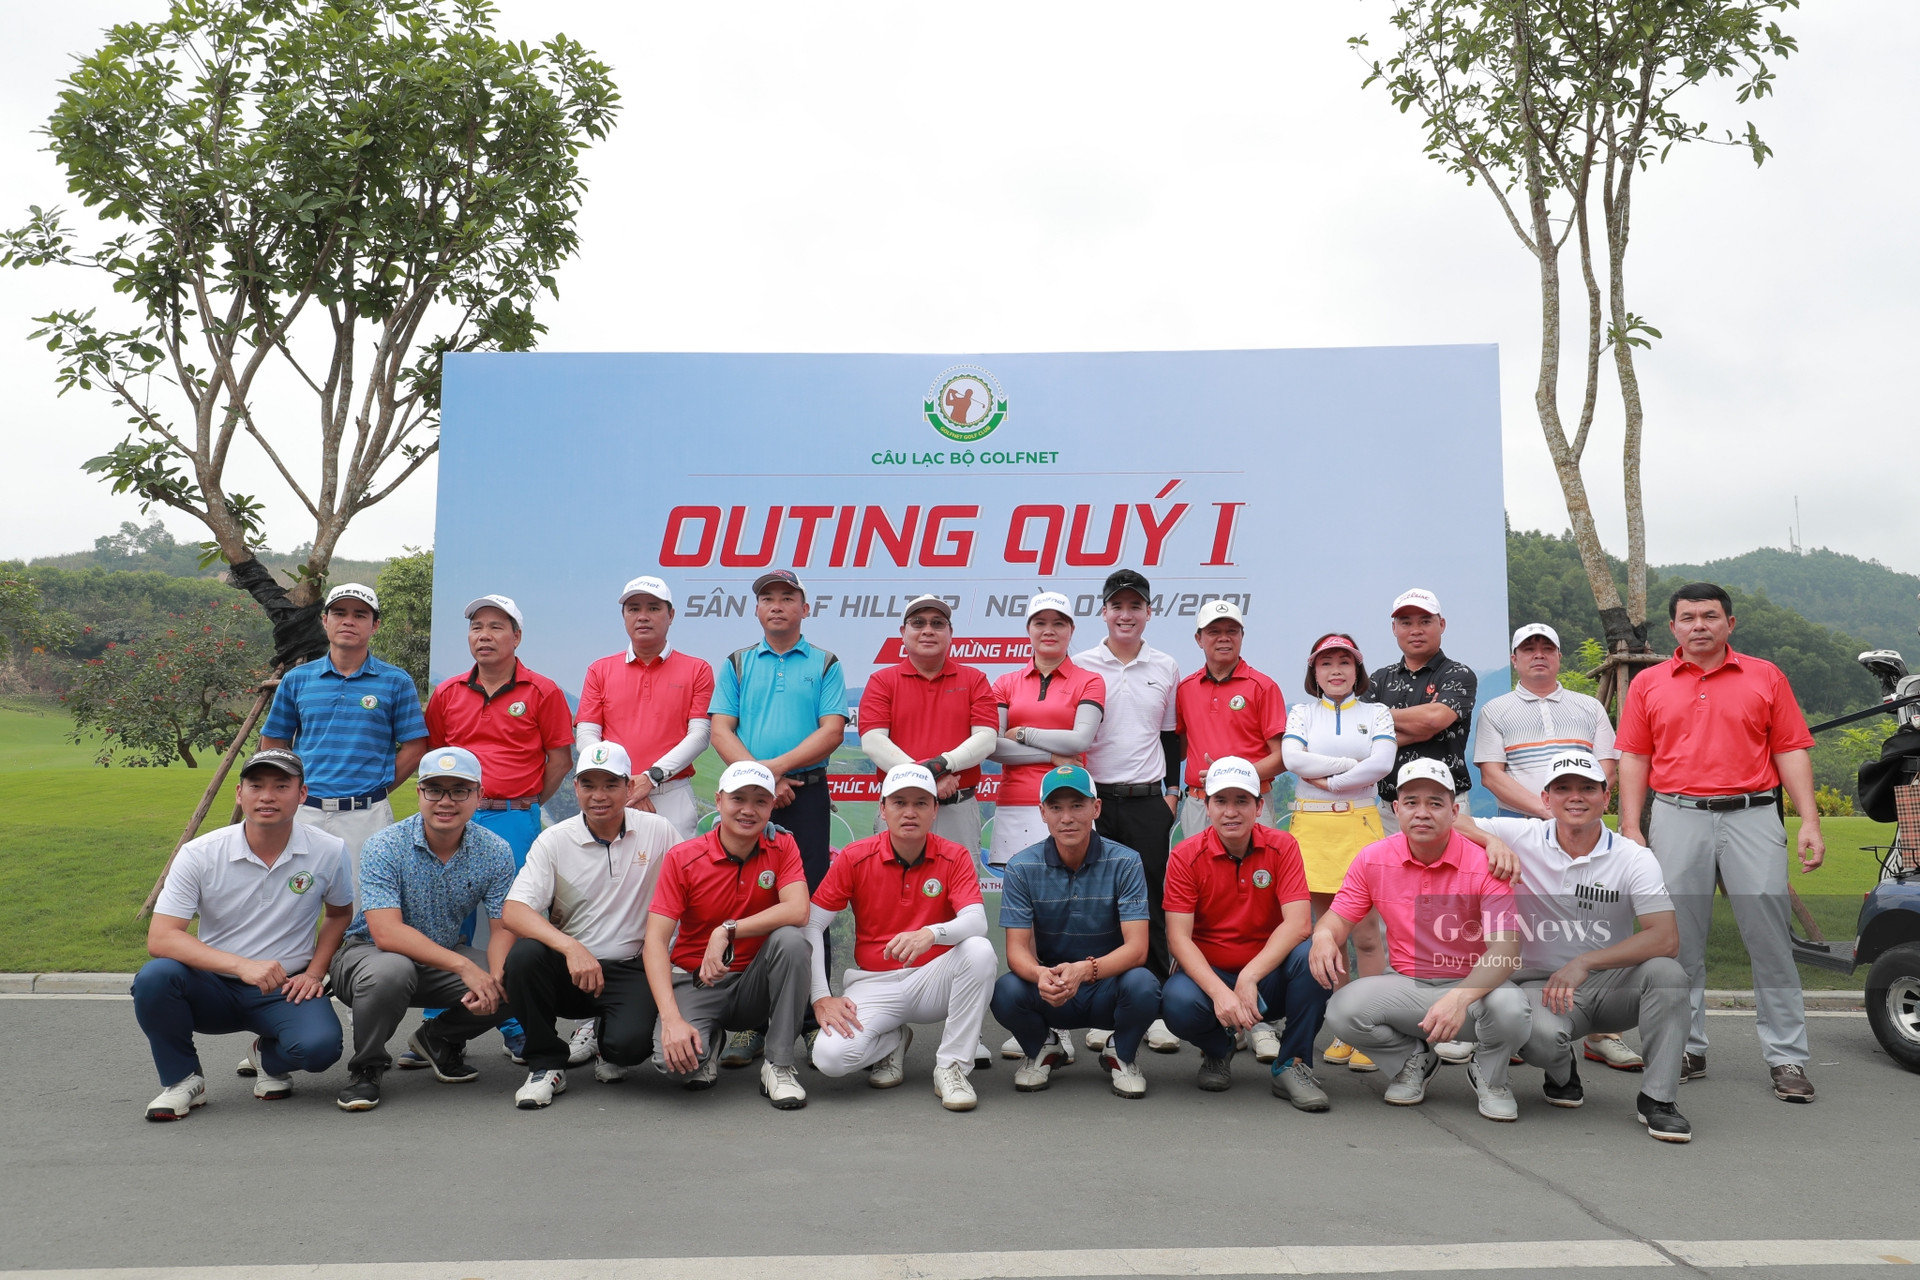 CLB GolfNet tổ chức giải đấu Outing Quý 1 gặp mặt đầu năm - Ảnh 1.